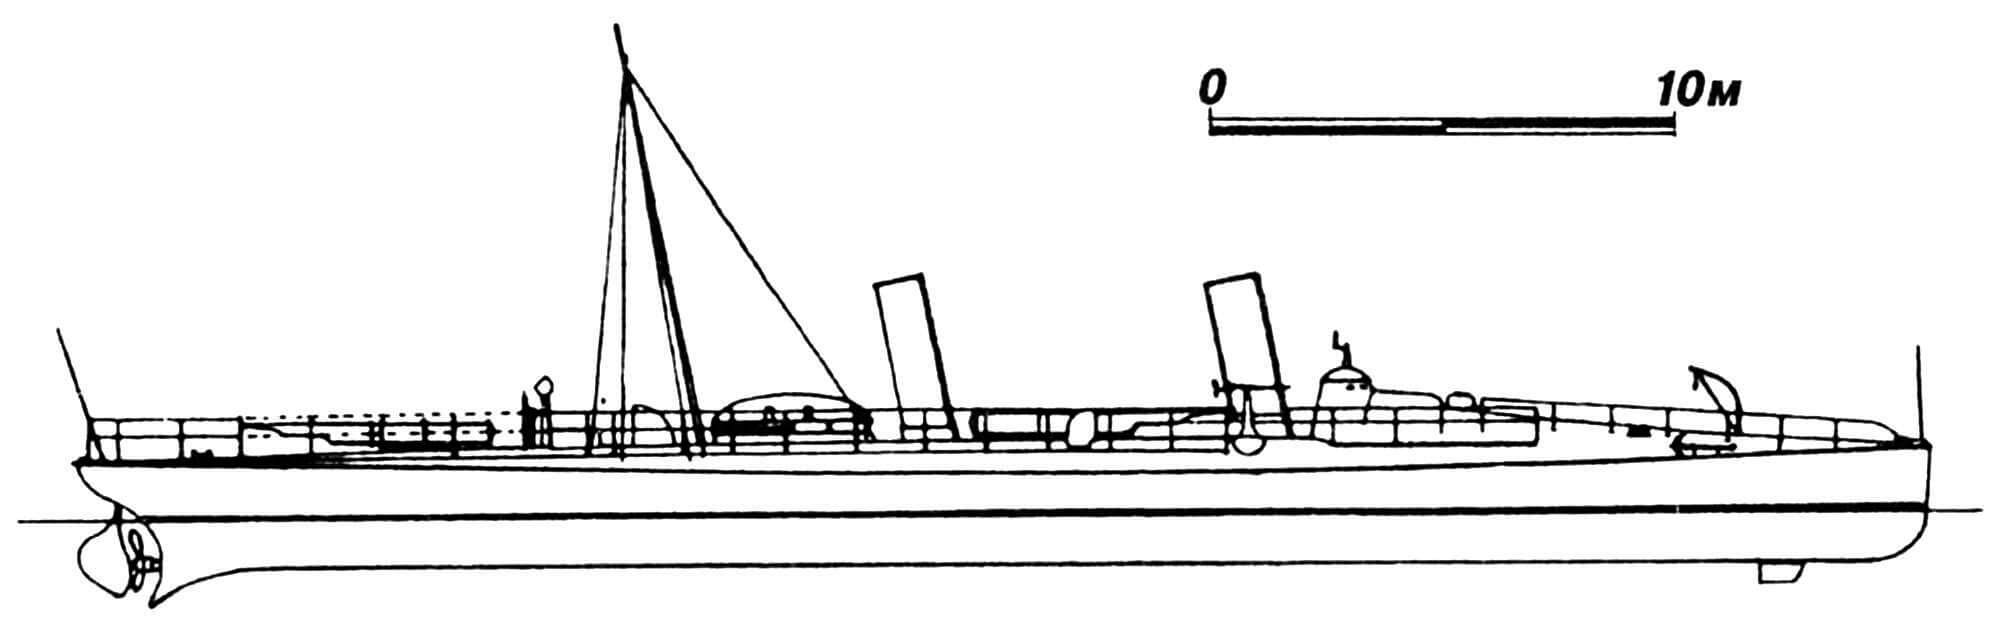 57. Миноносец «Хваль», Норвегия, 1896 г. Строился фирмой «Шихау». Водоизмещение нормальное 80 т. Длина наибольшая 39,90 м, ширина 4,80 м, осадка 2,15 м. Мощность одновальной паросиловой установки 1250 л.с., скорость на испытаниях 24,4 узла. Вооружение: два палубных торпедных аппарата, две 37-мм пушки. Построено три единицы: «Хваль», «Дельфин» и «Хай».